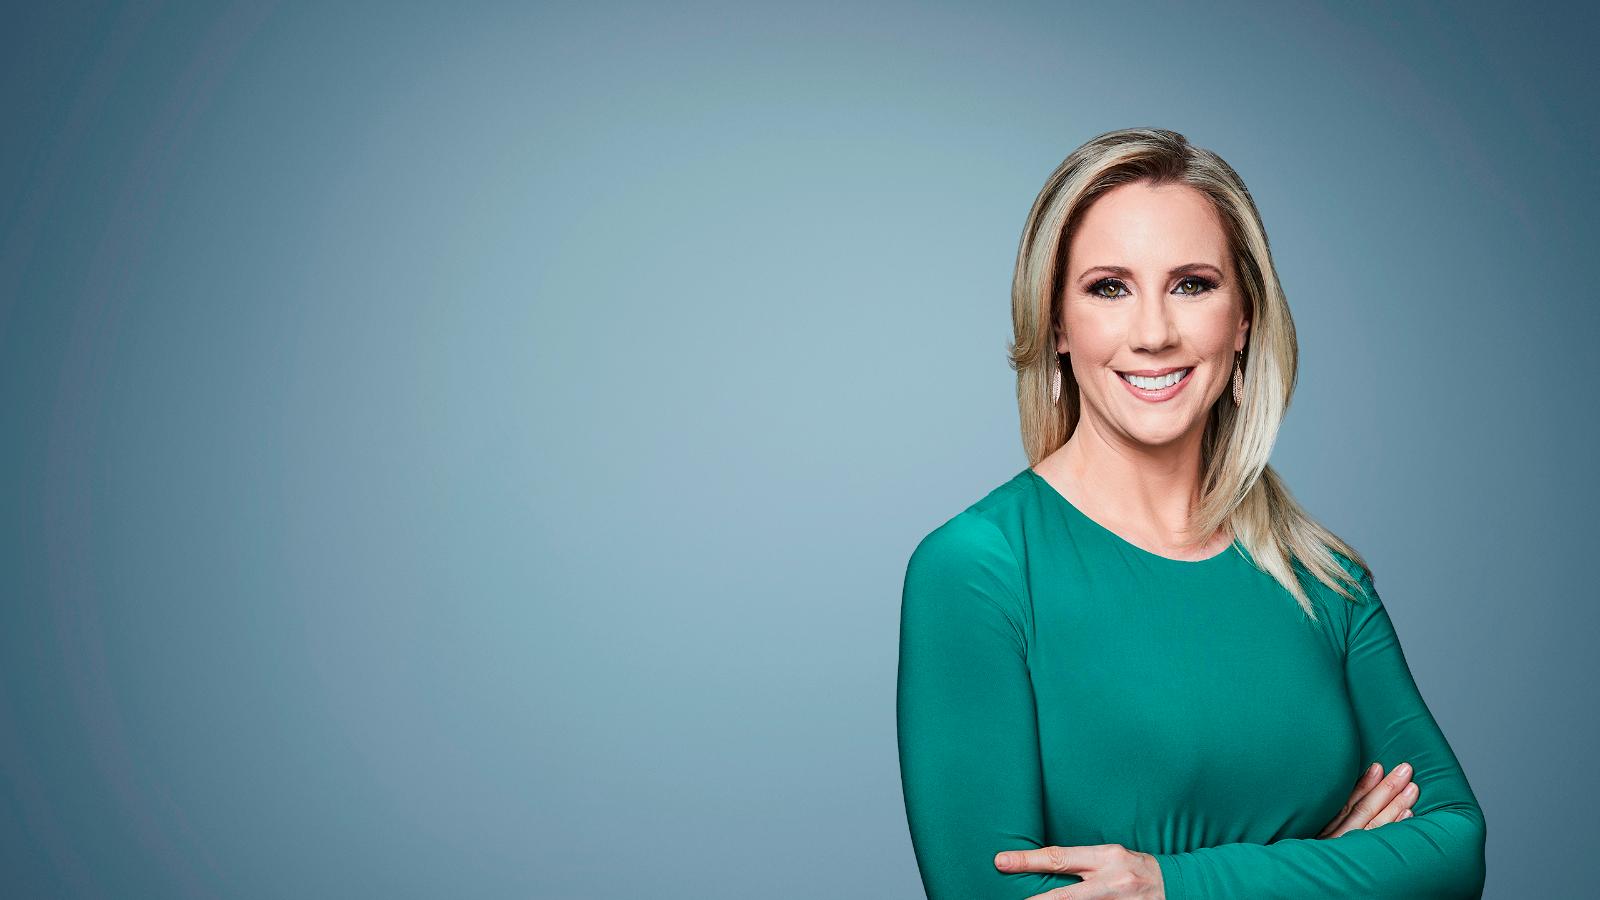 CNN Profiles - Jessica Schneider - Correspondent - CNN